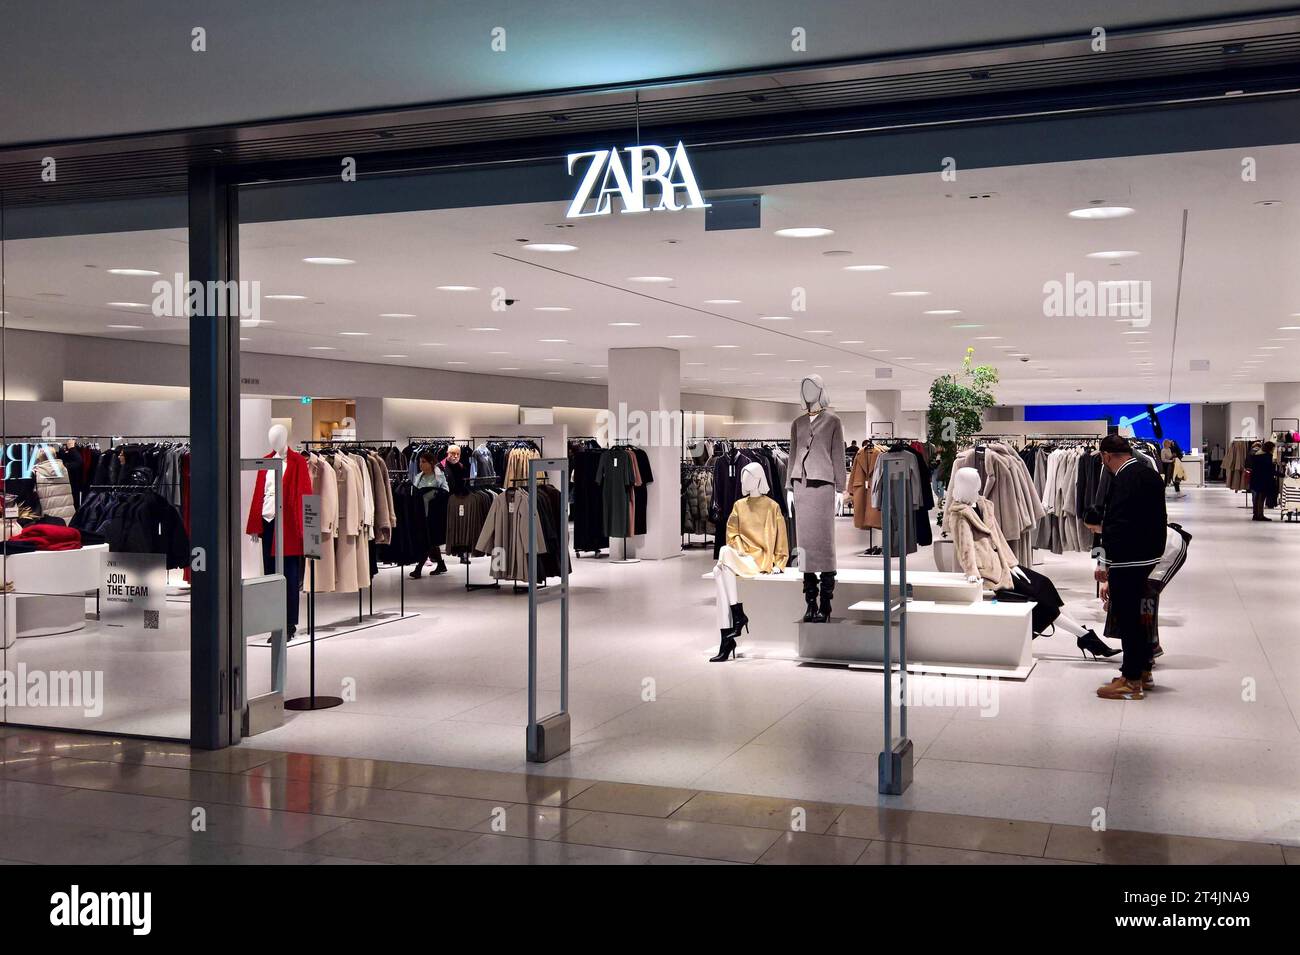 Zara Mode- und Fashion-Store. Zara ist ein Fast-Fashion-Unternehmen, das über ein eigenes Netz von Ladengeschäften und einen Onlineshop weltweit preisgünstige Bekleidung, Accessoires und Schuhe für Damen, Herren und Kinder verkauft. Zara ist die bekannteste Produktions- und Verkaufskette des von Amancio Ortega und Rosalia Mera gegründeten börsennotierten spanischen Inditex-Konzerns *** Zara ist ein Mode- und Modegeschäft Zara ist ein Fast-Fashion-Unternehmen, das billige Kleidung, Accessoires und Schuhe für Frauen verkauft. Männer und Kinder weltweit über ein eigenes Netzwerk von Geschäften und einen Online-Shop ZAR Stockfoto